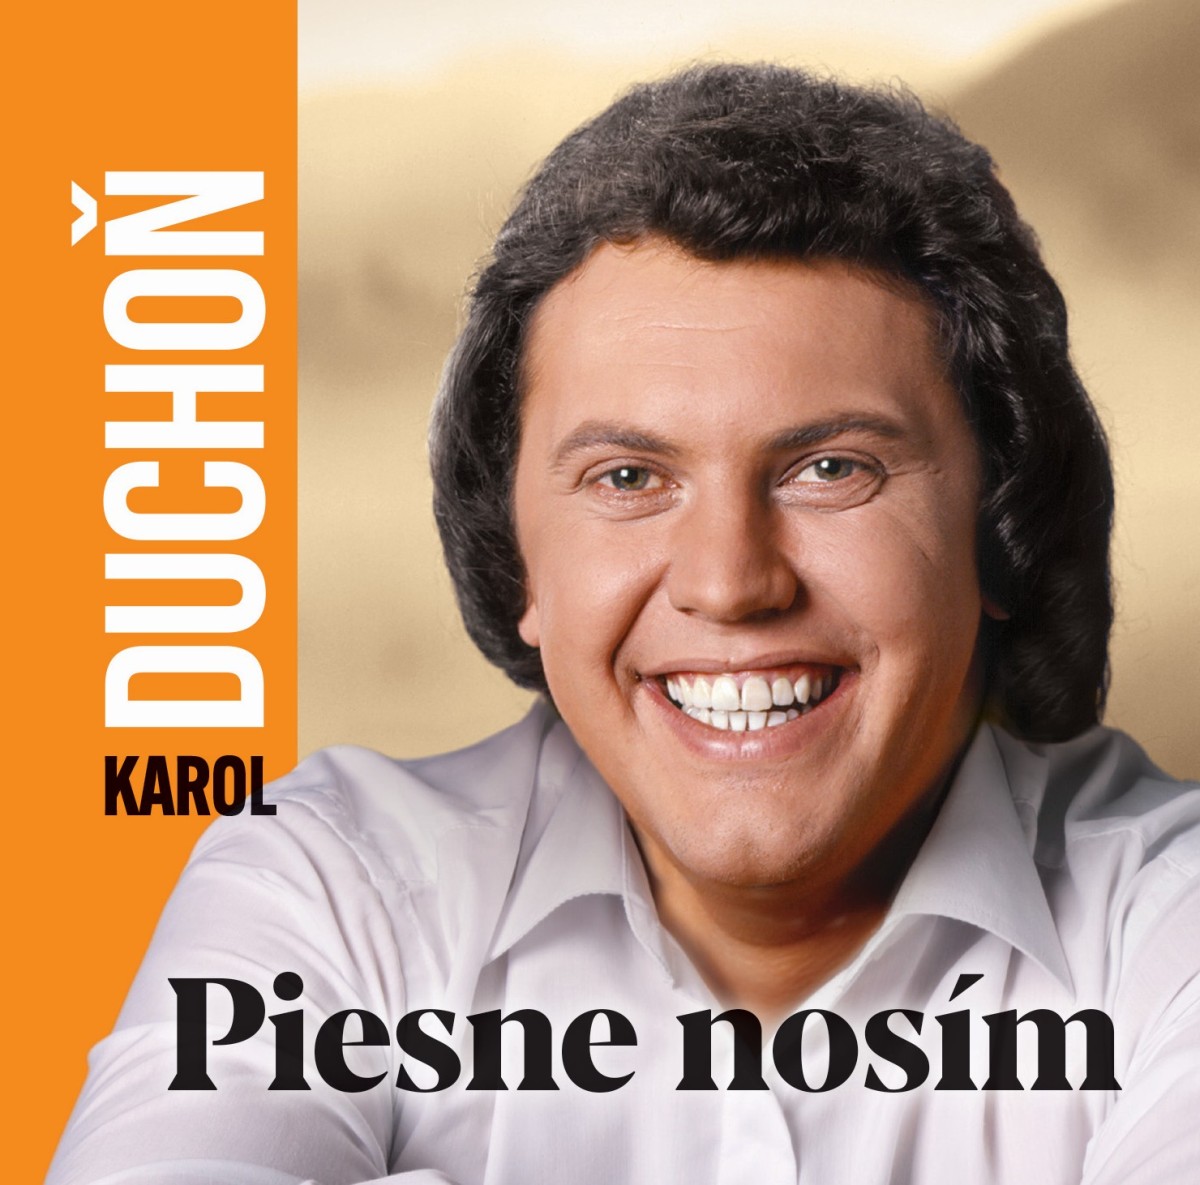 CD Shop - DUCHON KAROL PIESNE NOSIM